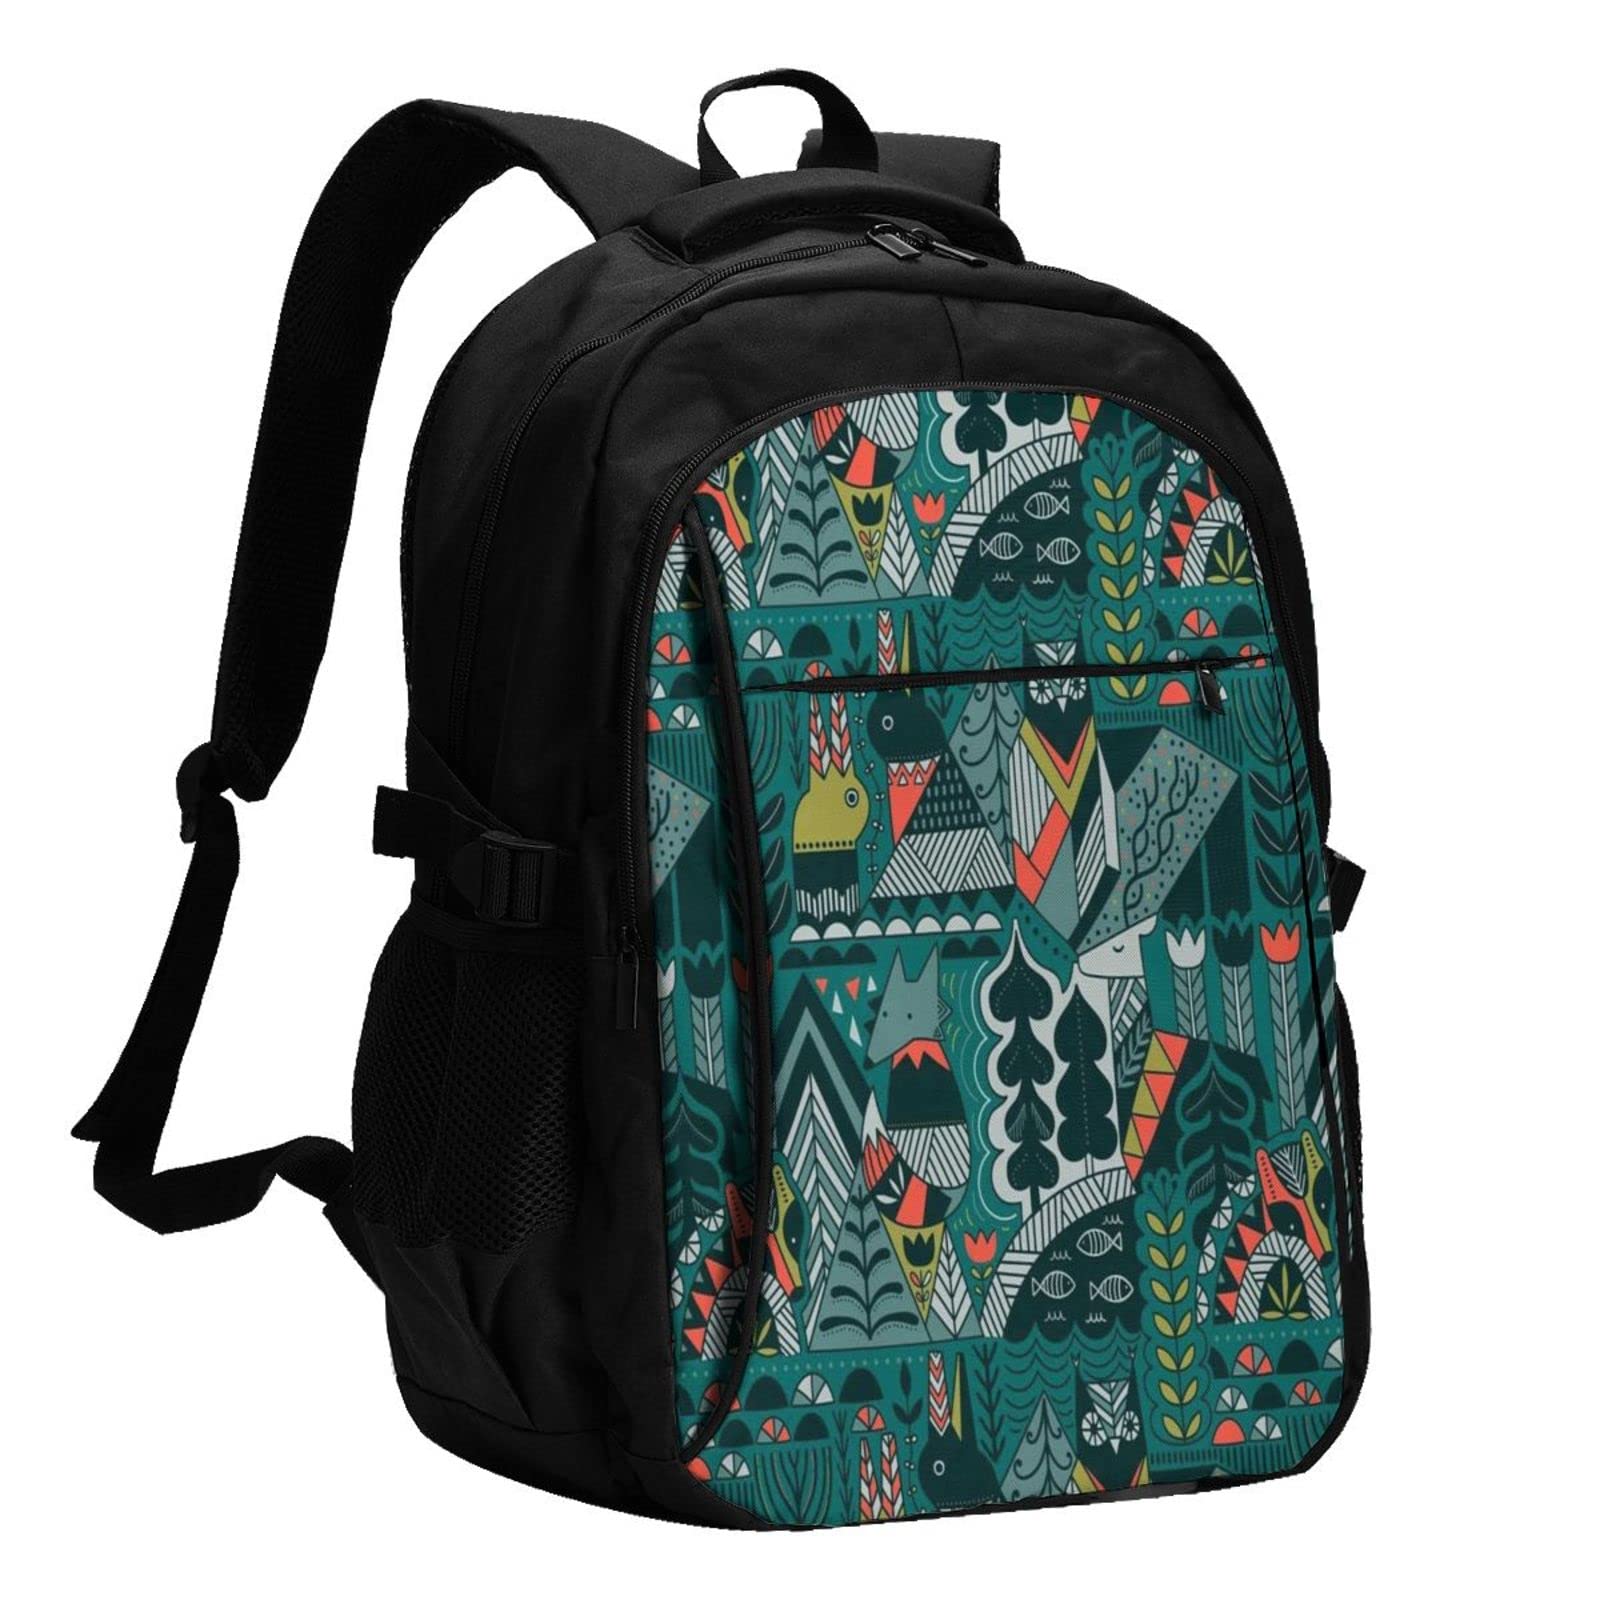 送料無料Green Animals Usb Travel Laptop Backpack Water Resistant Casual Daypack Computer Bag Business並行輸入品